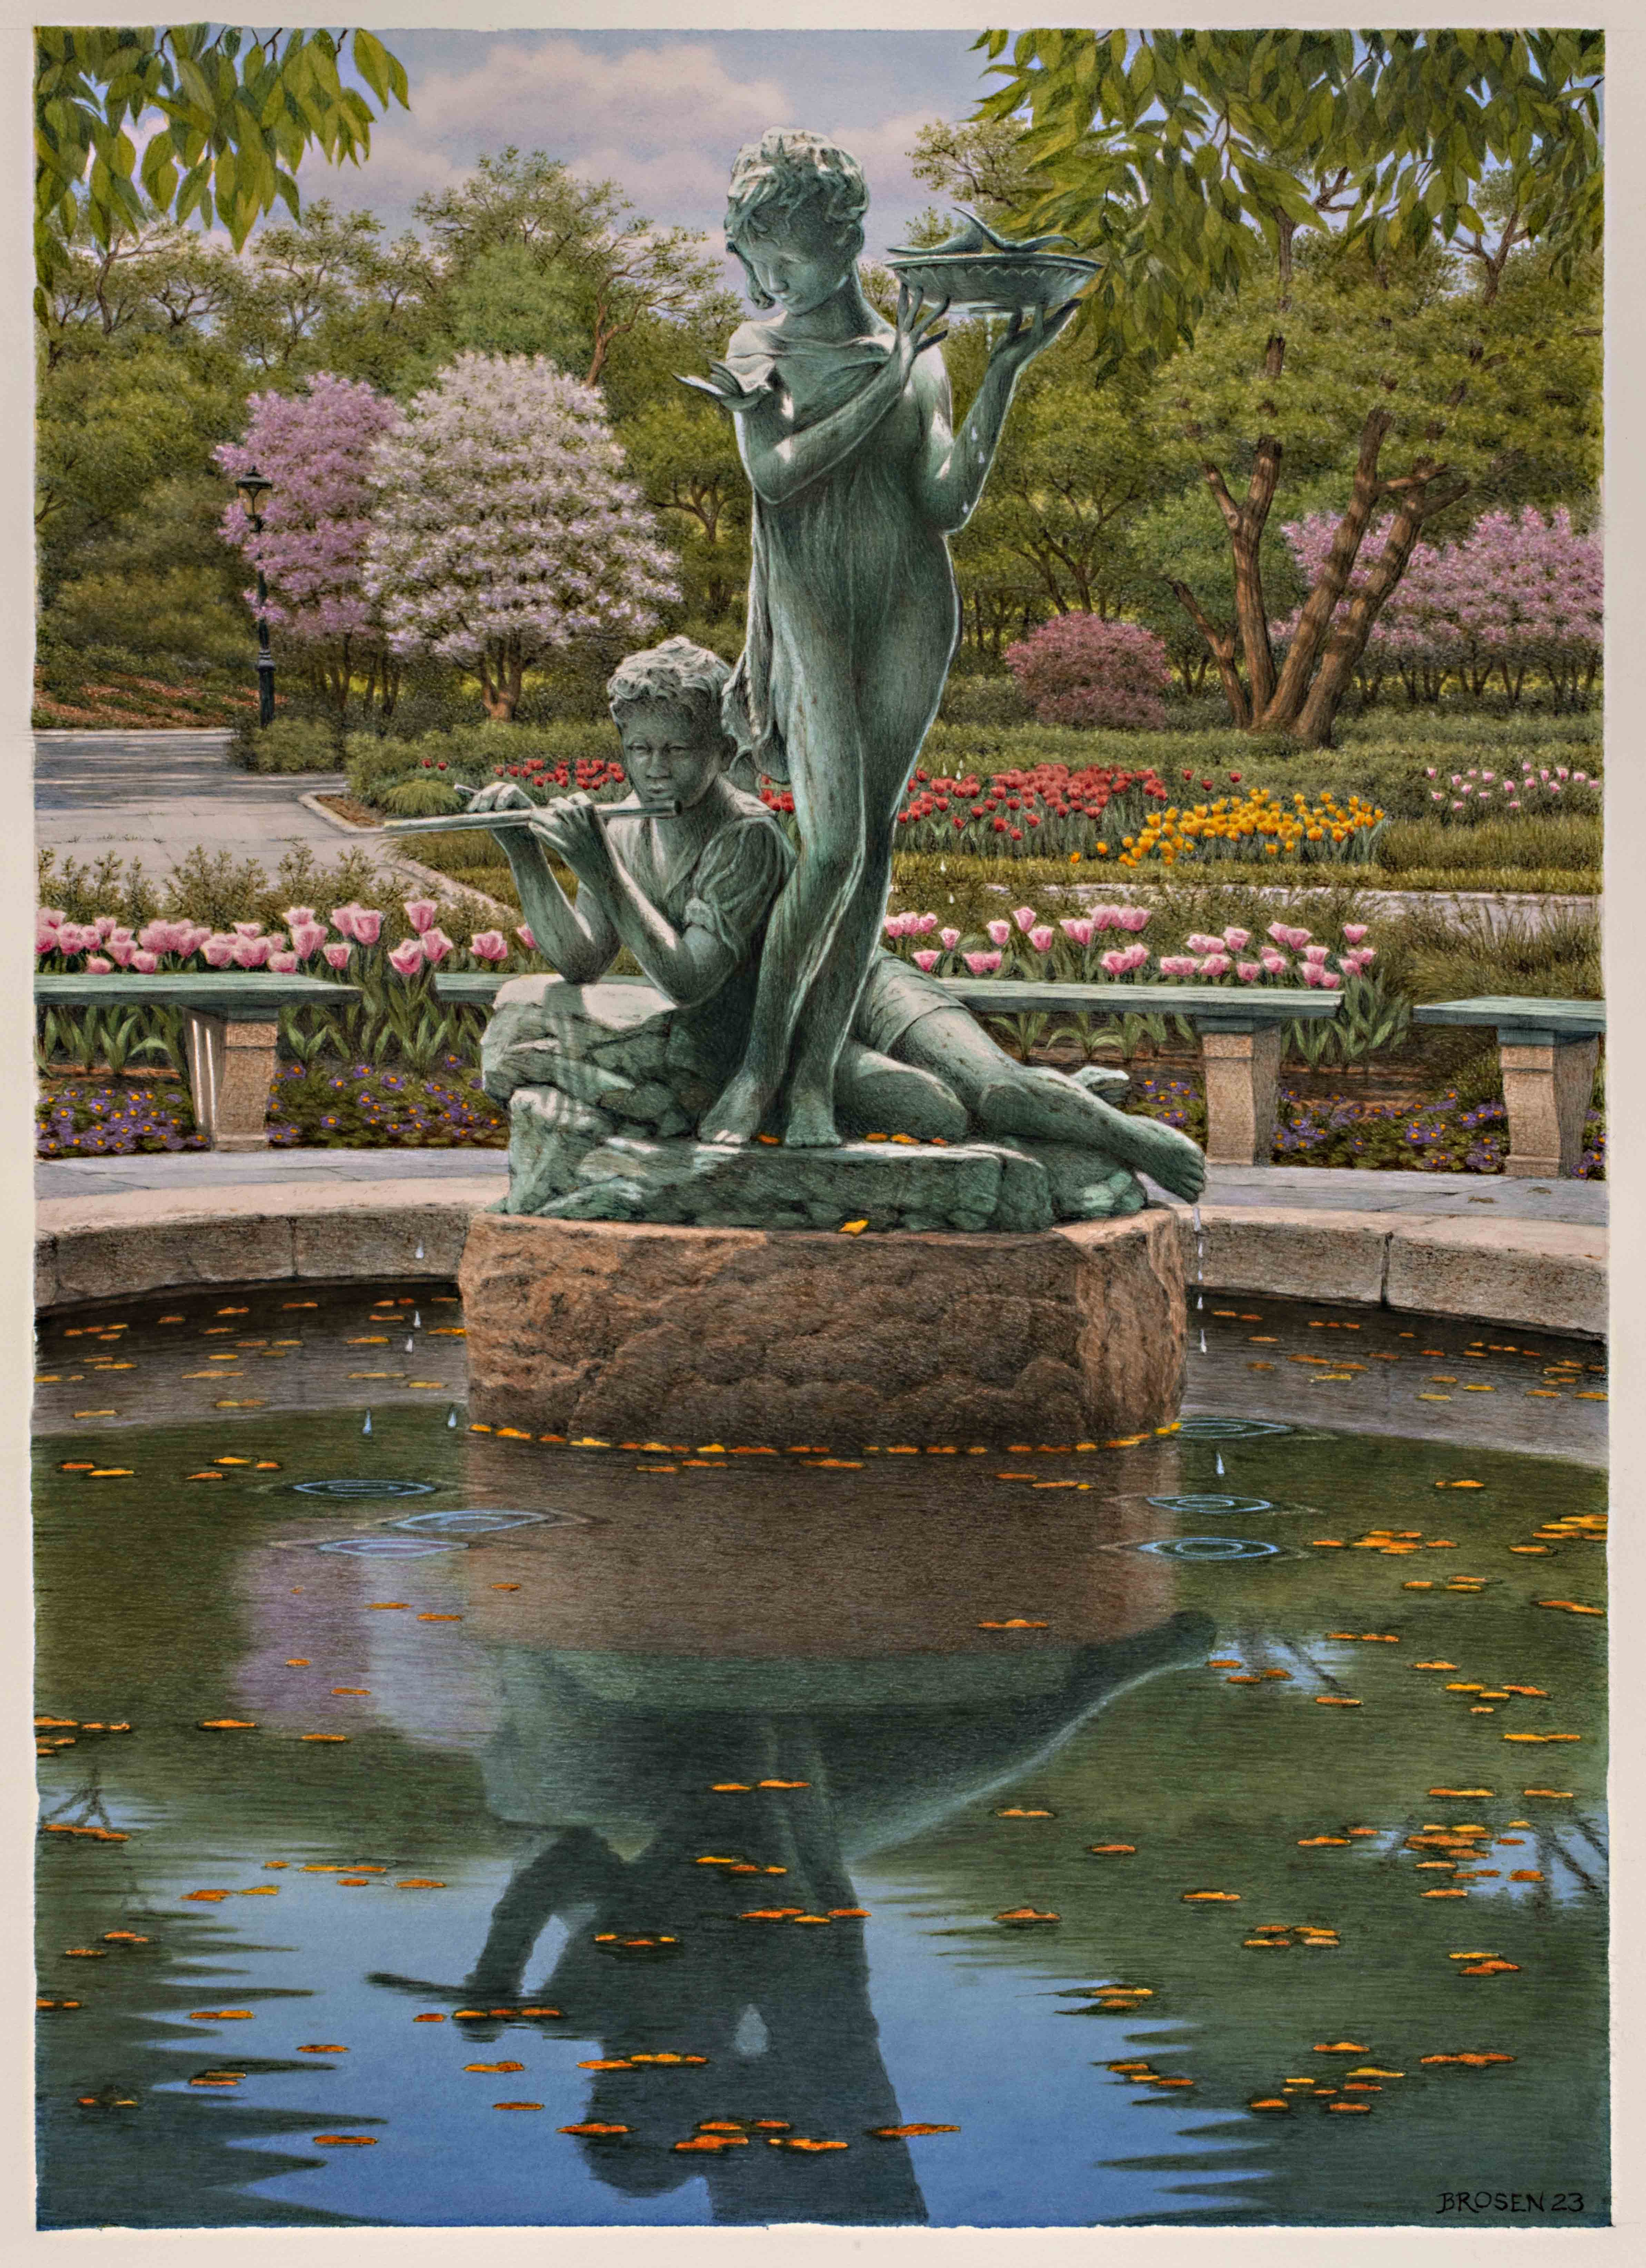 Uma pintura de duas estátuas de crianças em uma fonte com flores e árvores ao fundo.